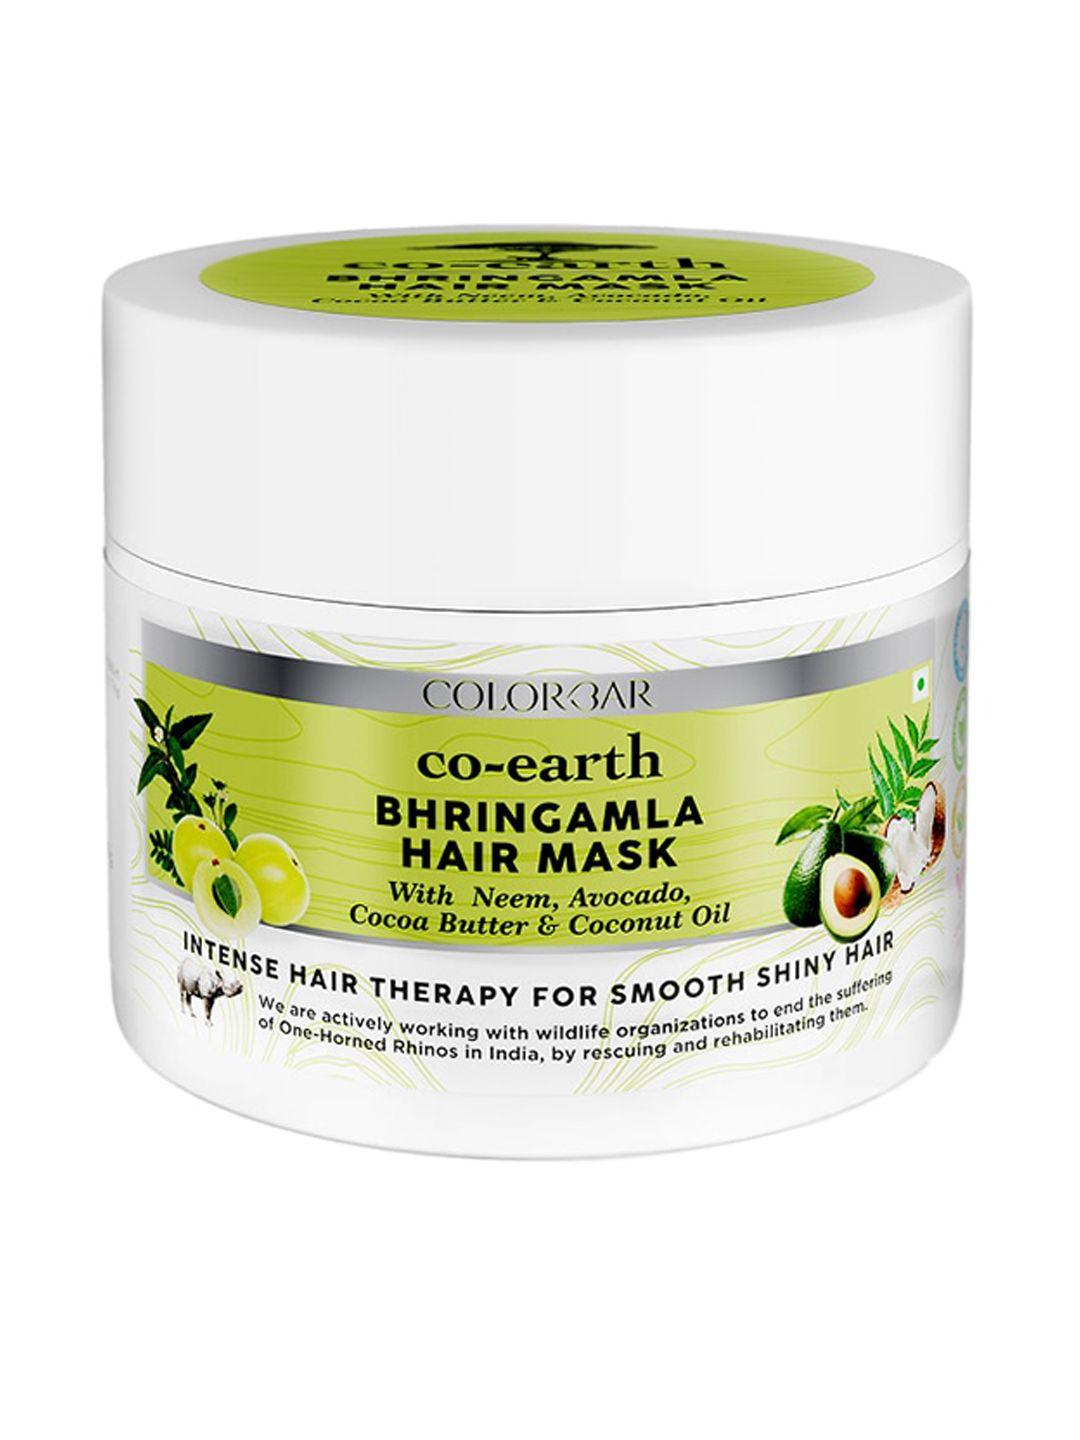 colorbar co-earth bhringamla hair mask 200 g